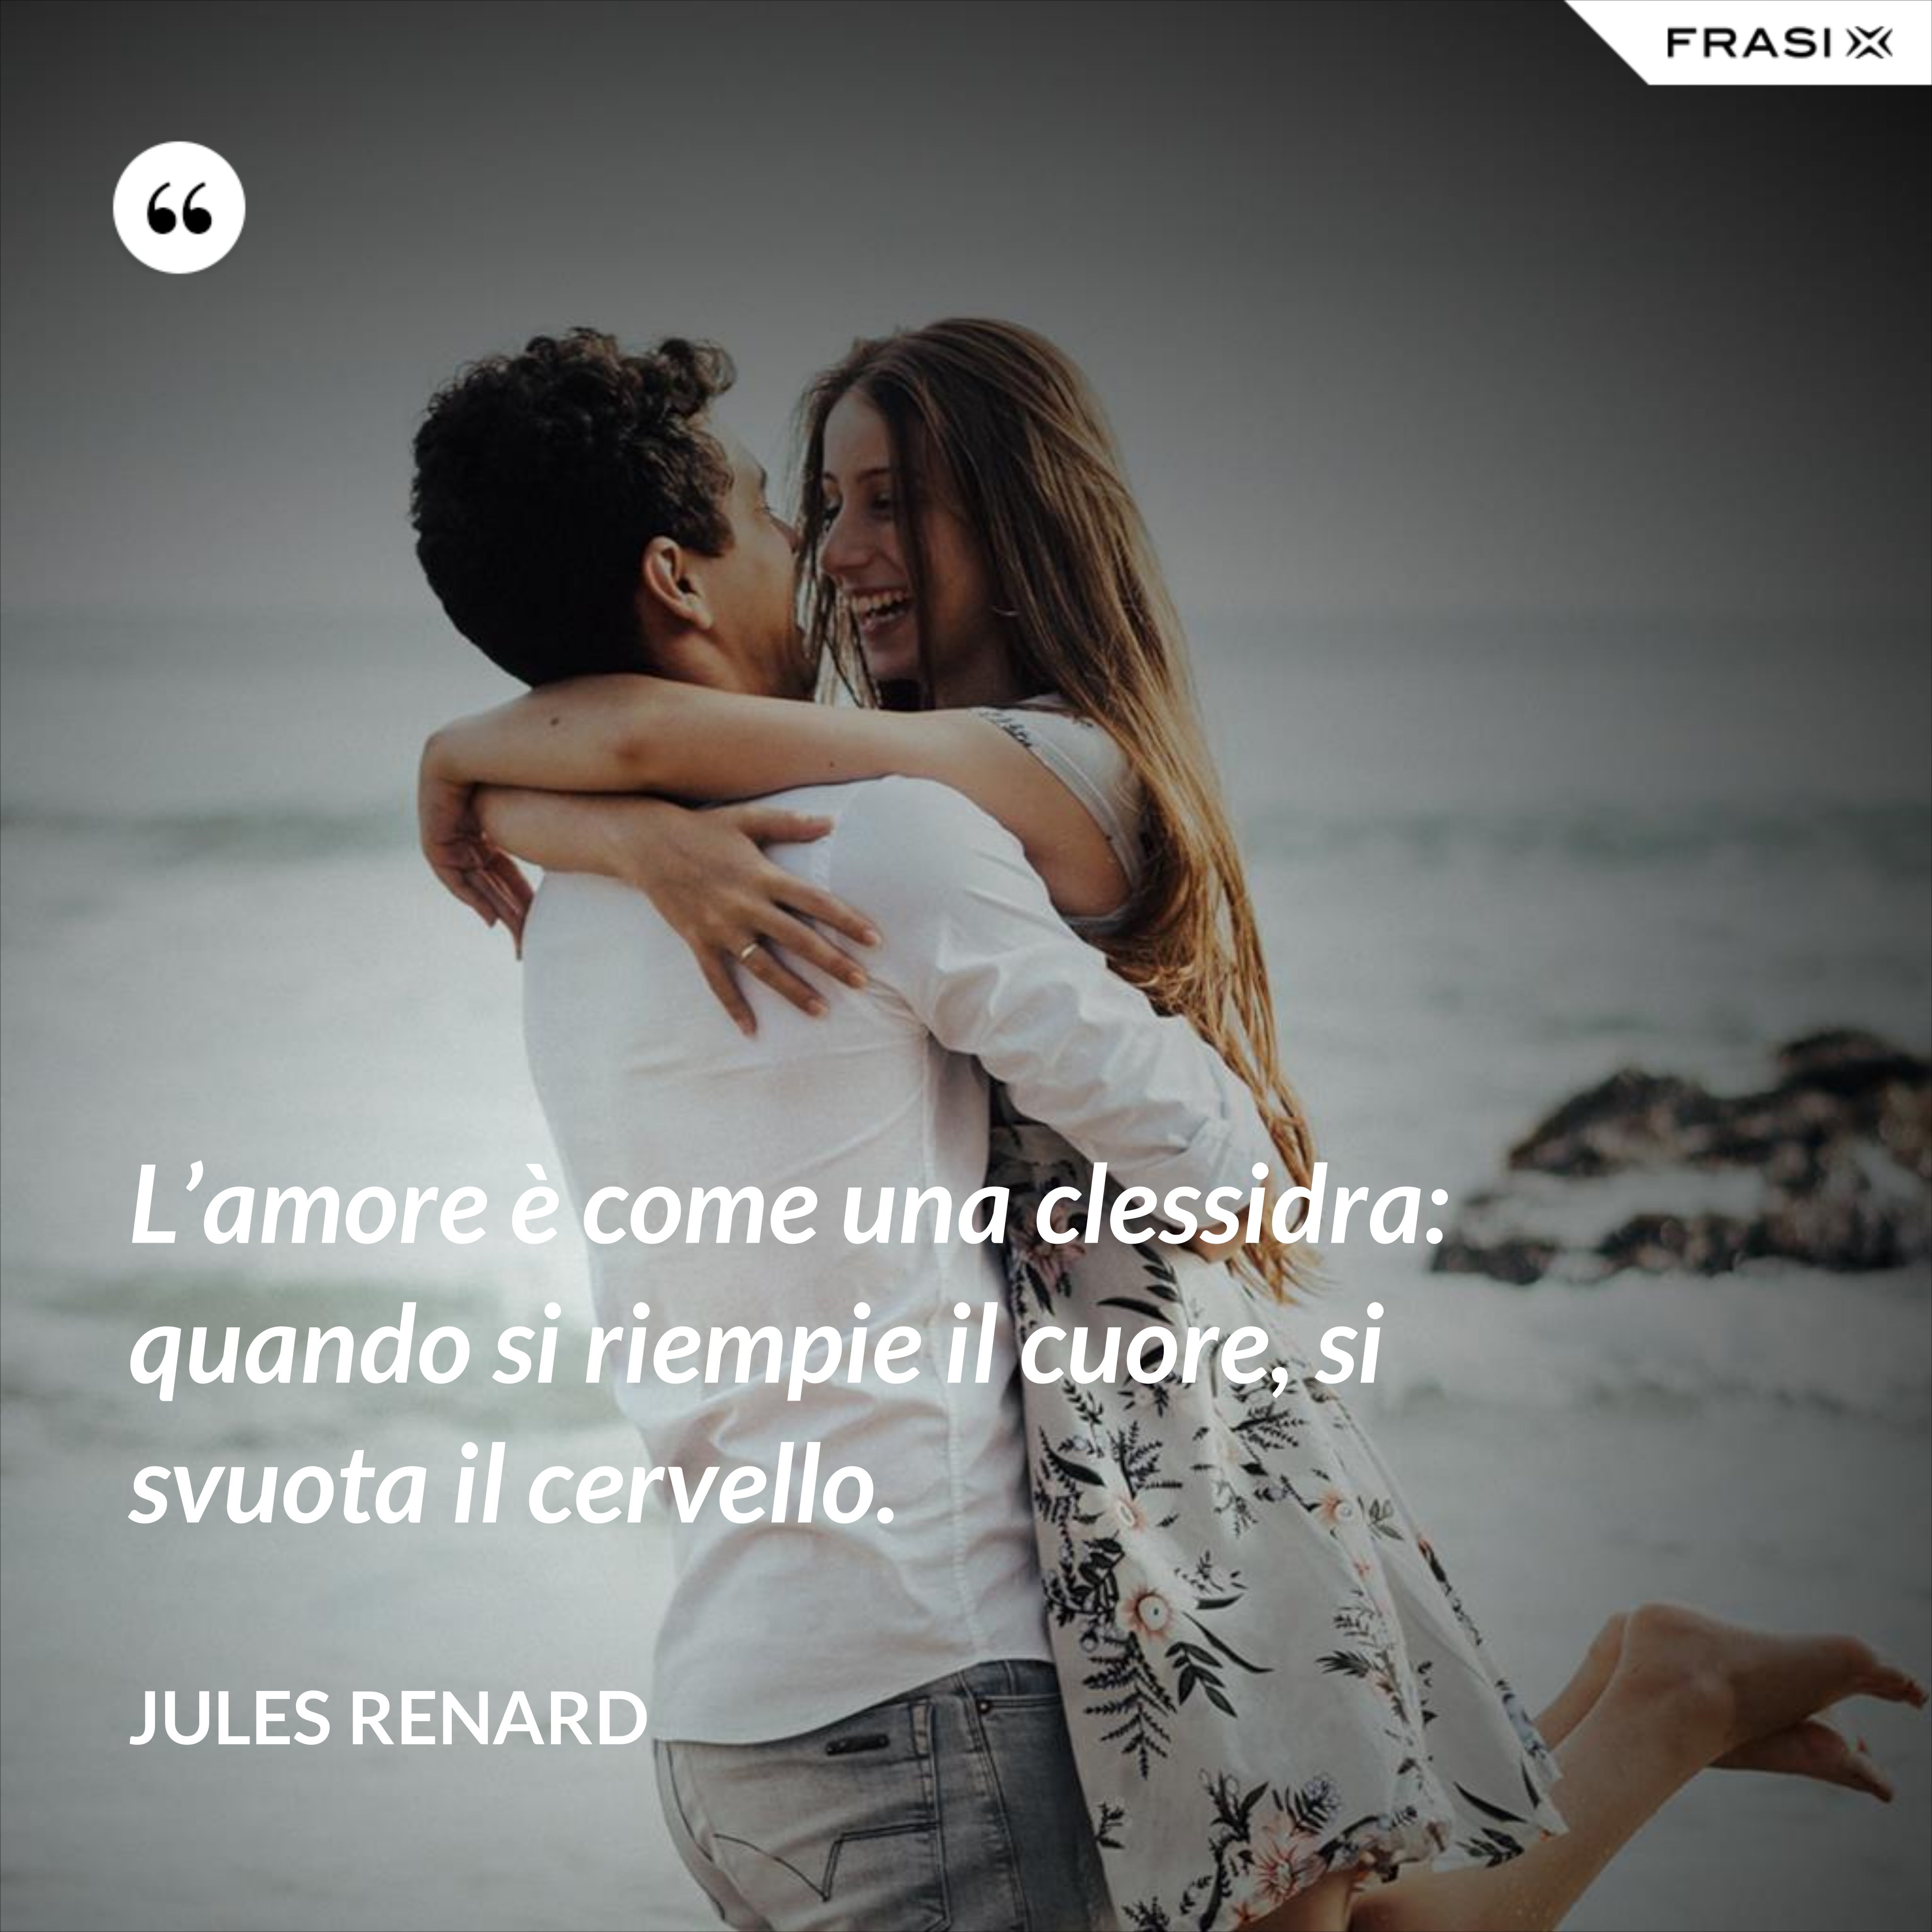 L’amore è come una clessidra: quando si riempie il cuore, si svuota il cervello. - Jules Renard